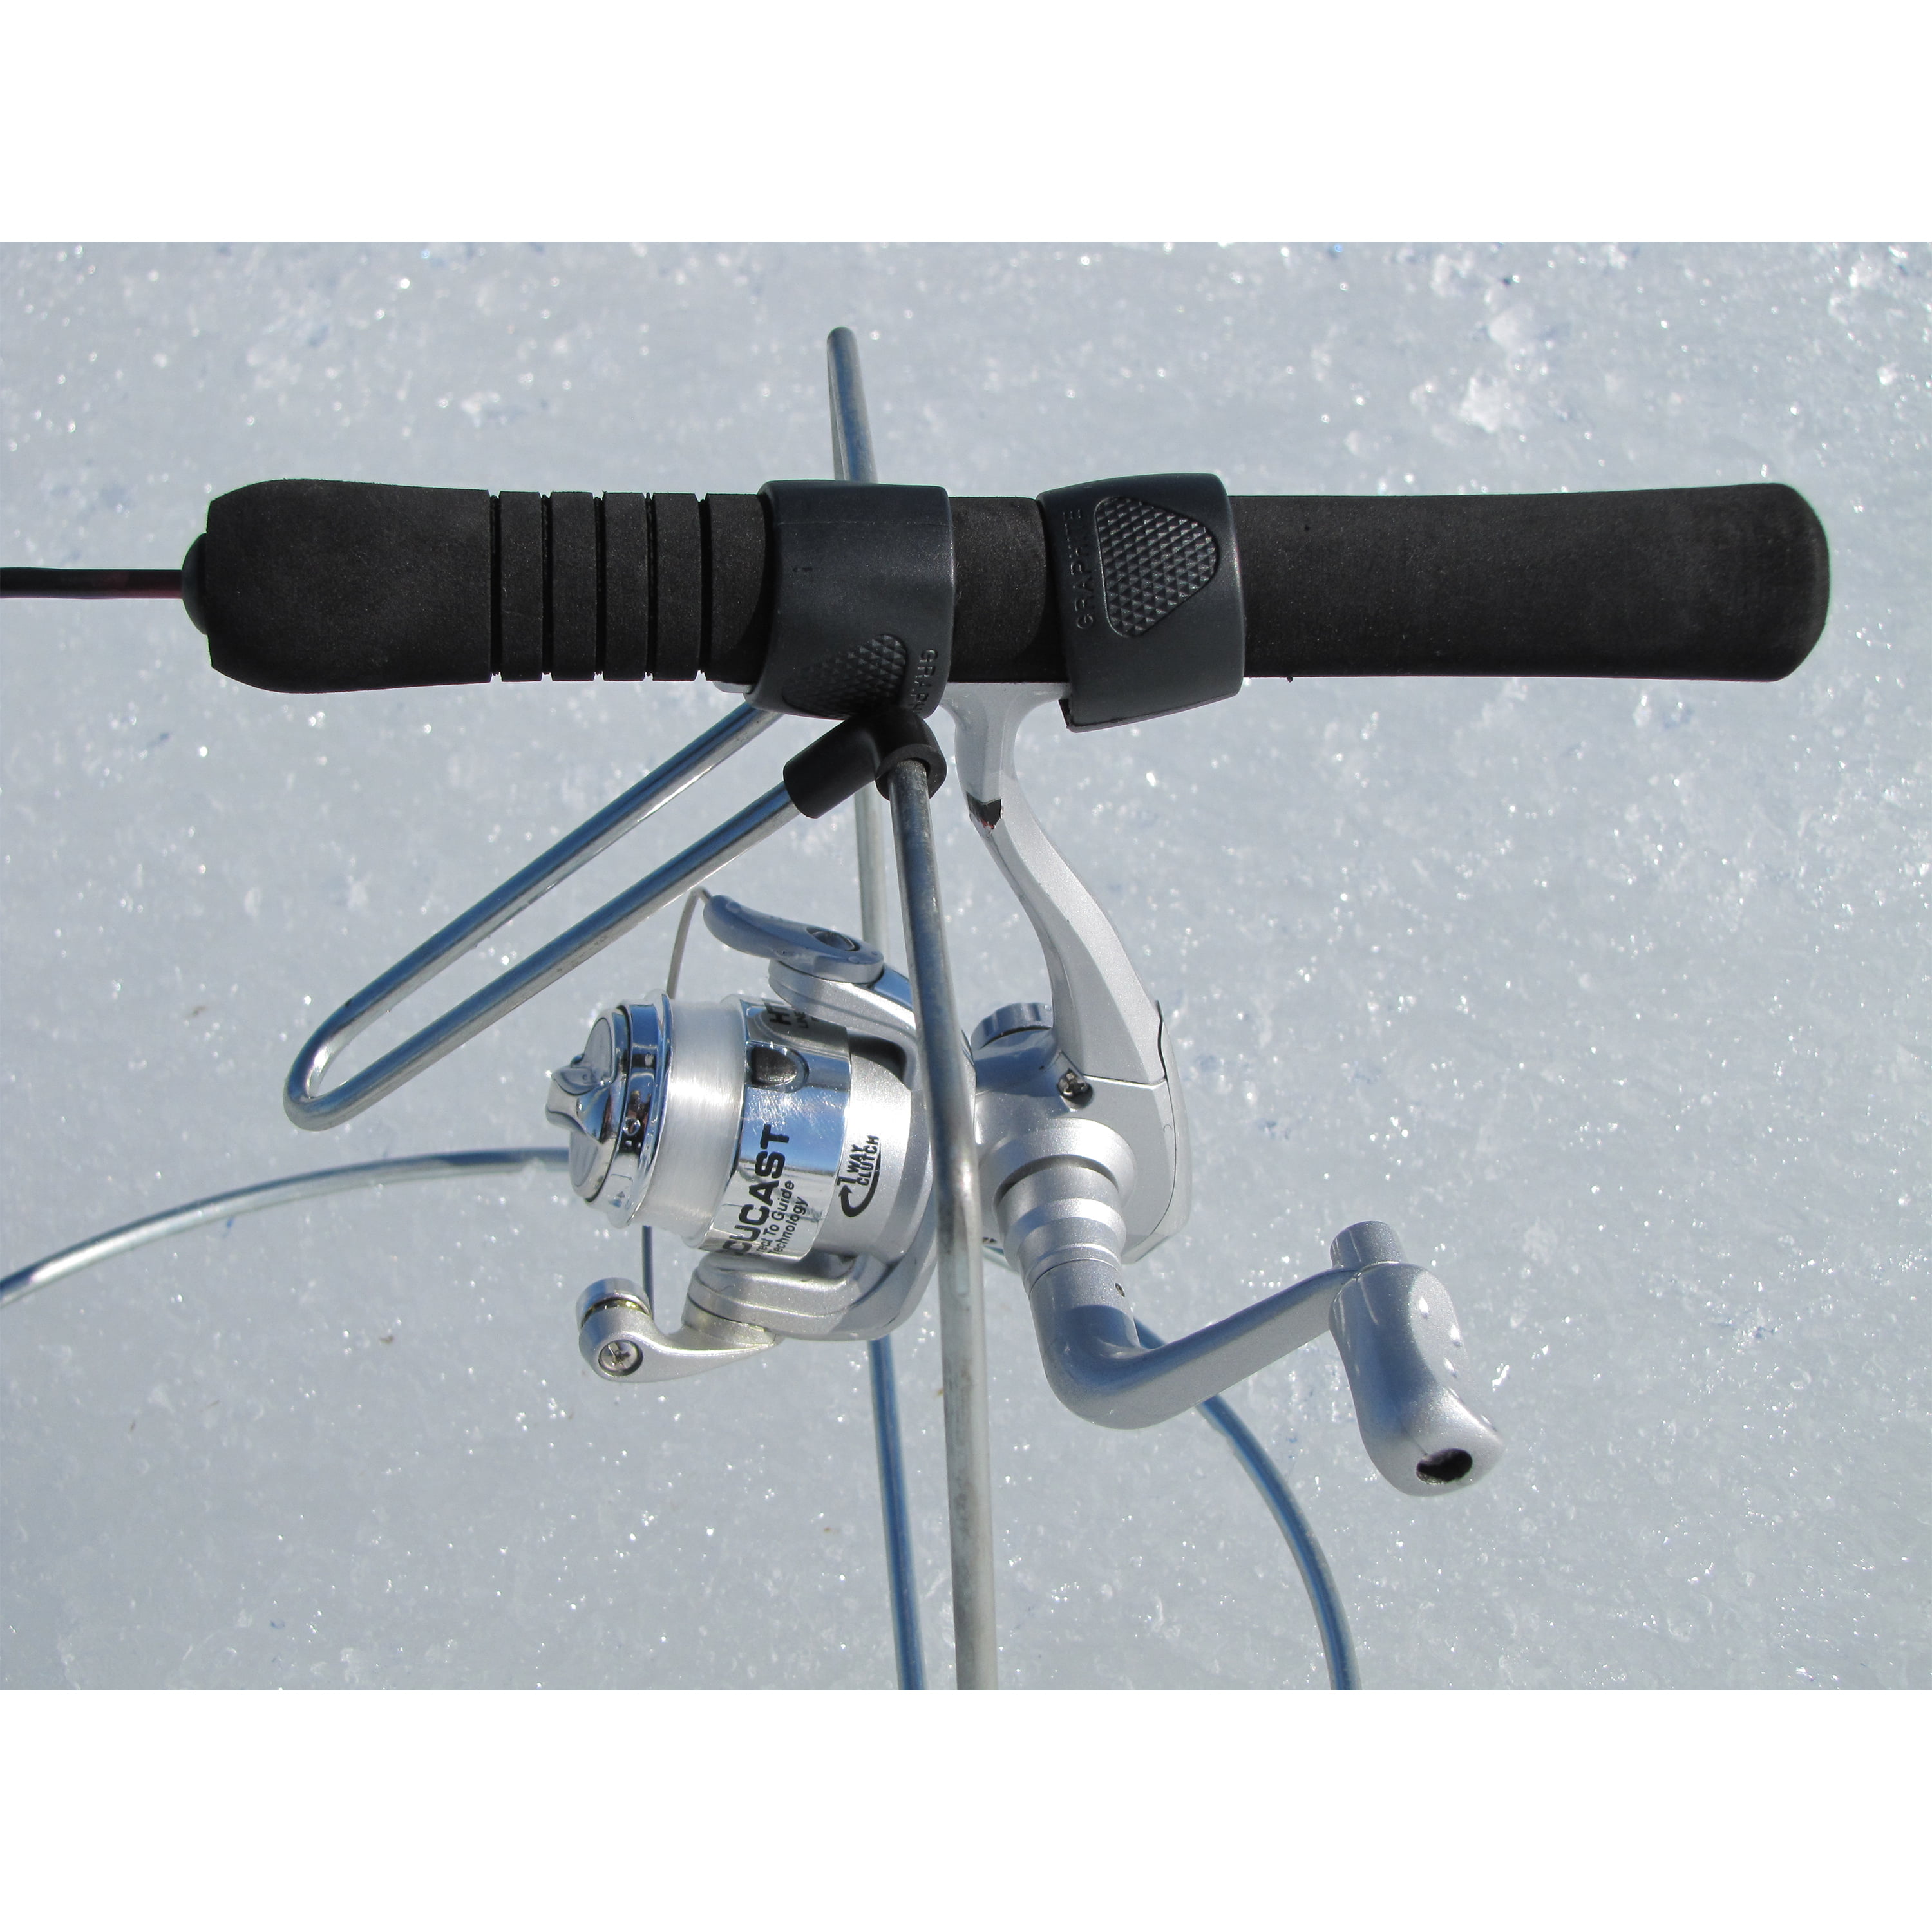 HT Enterprises Little Jigger Balanced Ice Fishing Rod Holder 